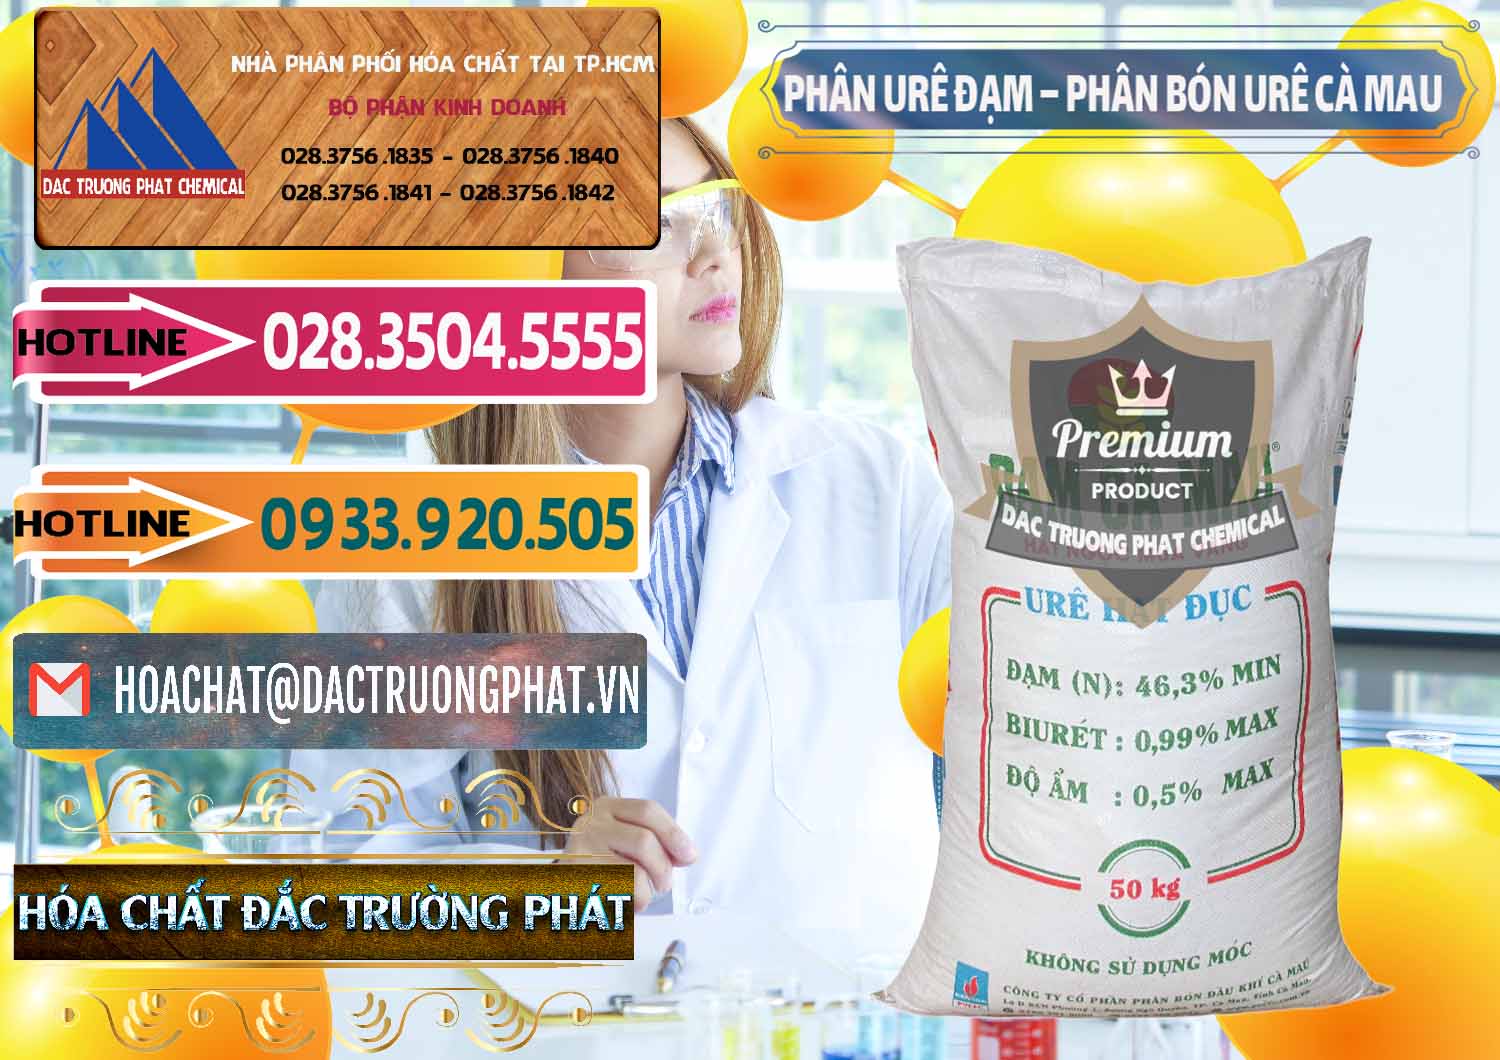 Cty chuyên bán & phân phối Phân Urê Đạm – Phân Bón Urê Cà Mau Việt Nam - 0192 - Cty cung cấp & kinh doanh hóa chất tại TP.HCM - dactruongphat.vn